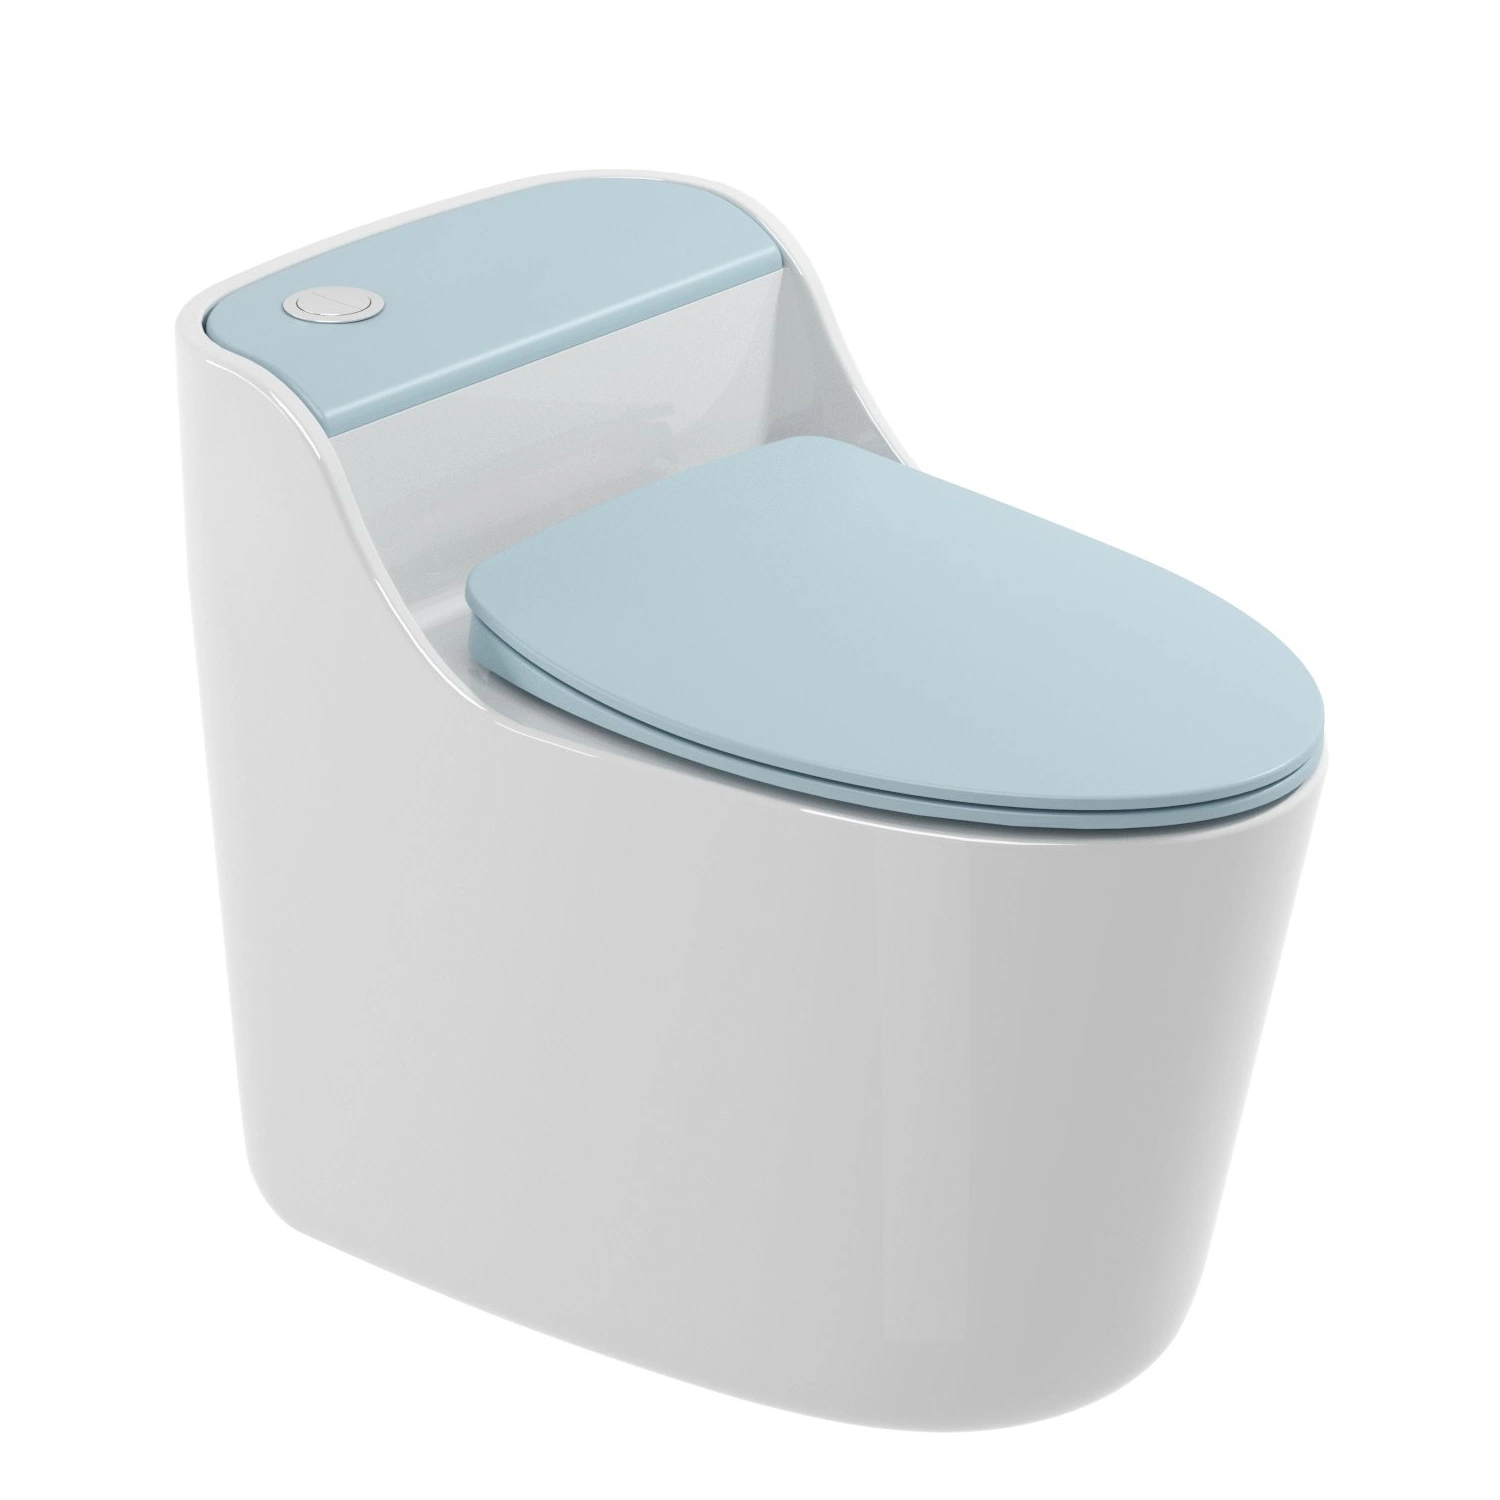 Sanitärware Toiletten One Piece Siphon Flush Toilette Porzellan Farbig Hoch Qualität Wc Wc Schüssel Sanitär